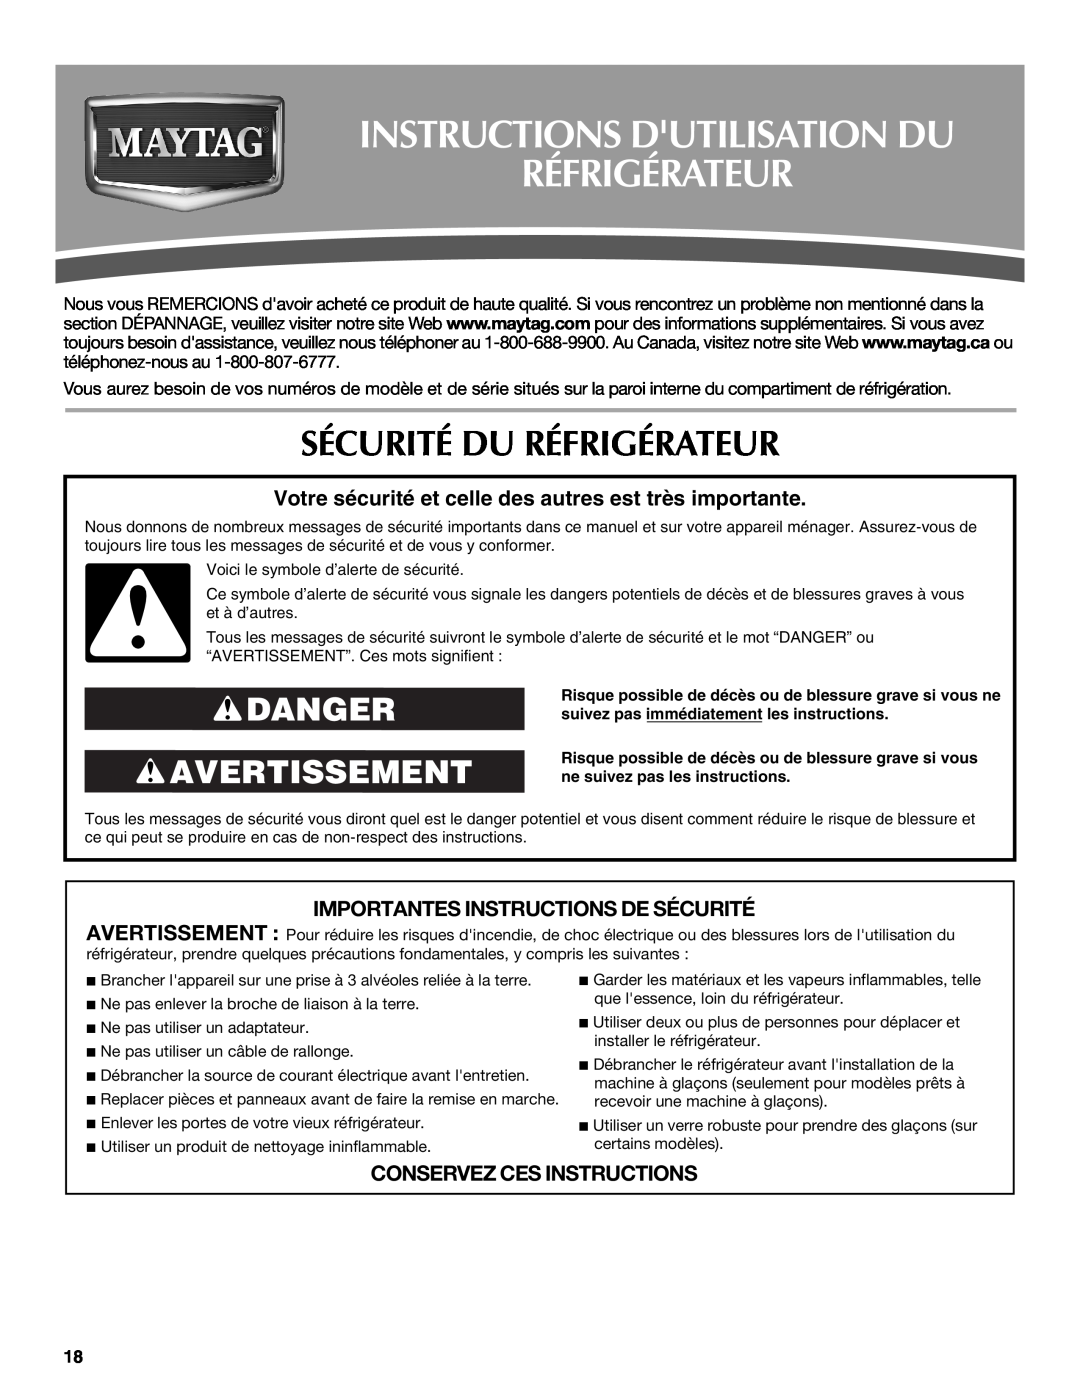 Maytag W10216883A, W10237807A Instructions Dutilisation Du Réfrigérateur, Sécurité Du Réfrigérateur, Danger Avertissement 